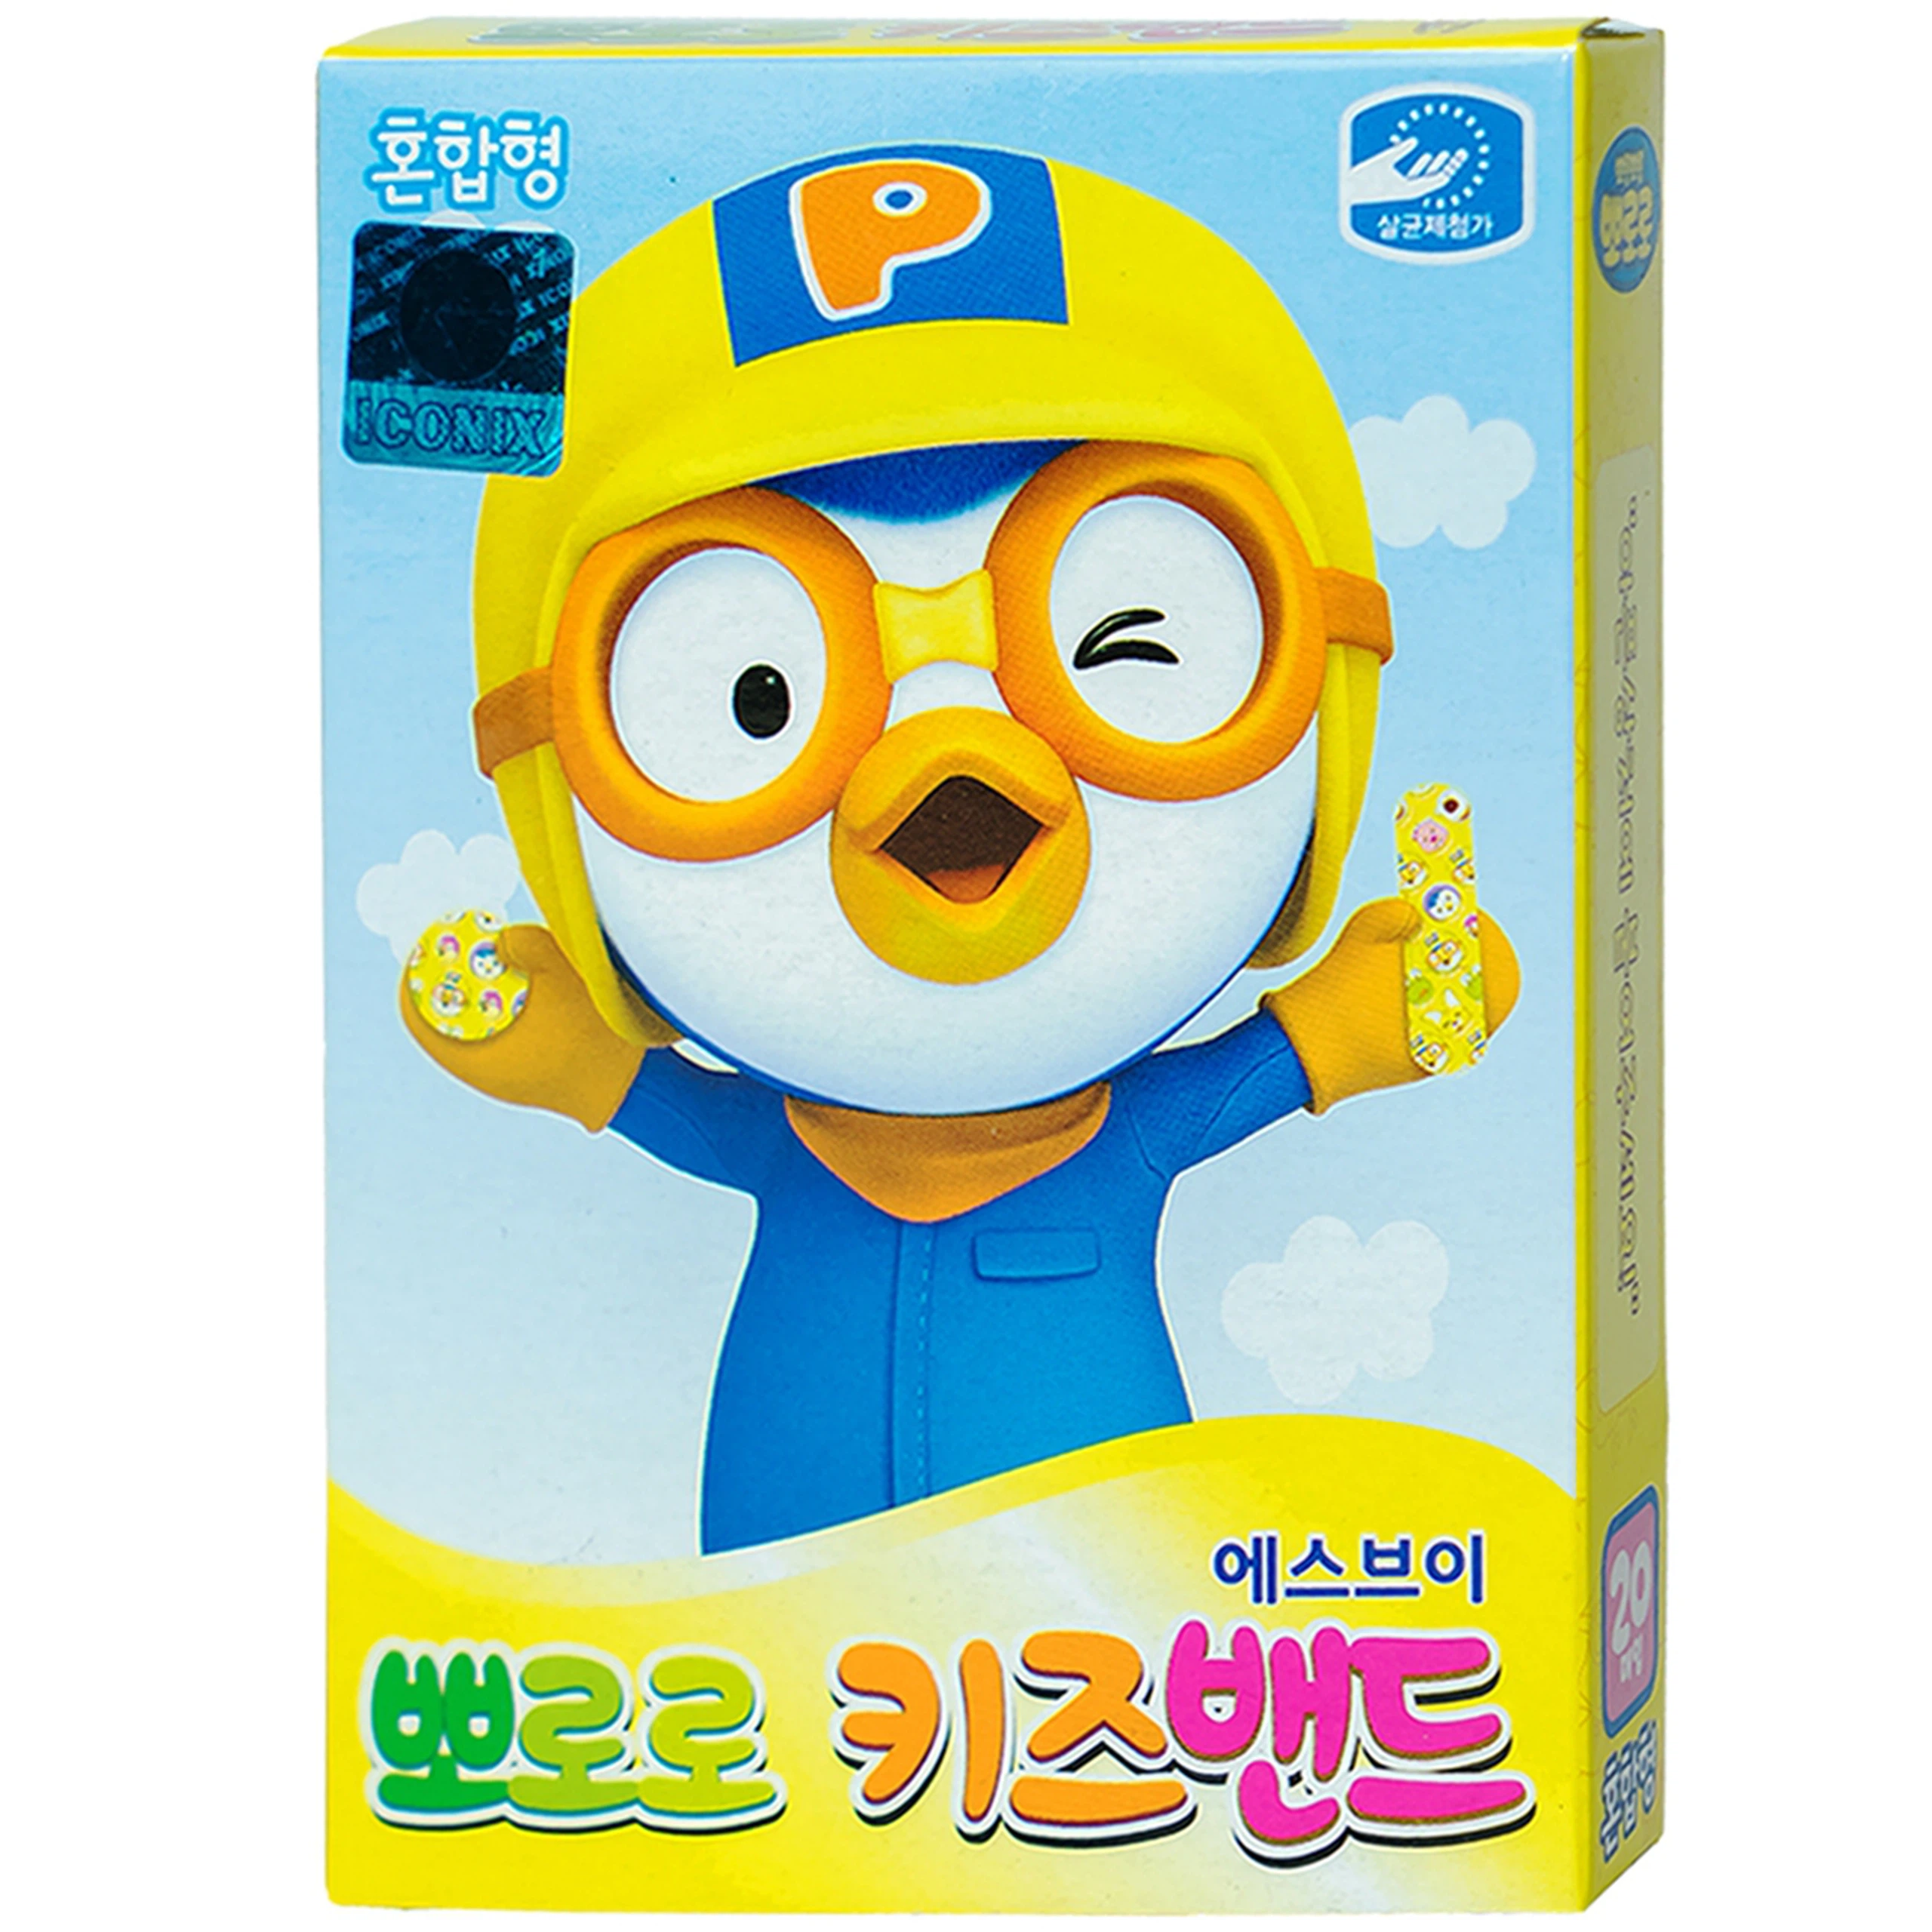 Băng keo cá nhân in hình Pororo Kids Band 4 size Young Chemical bảo vệ vết thương dành cho trẻ nhỏ (20 miếng)